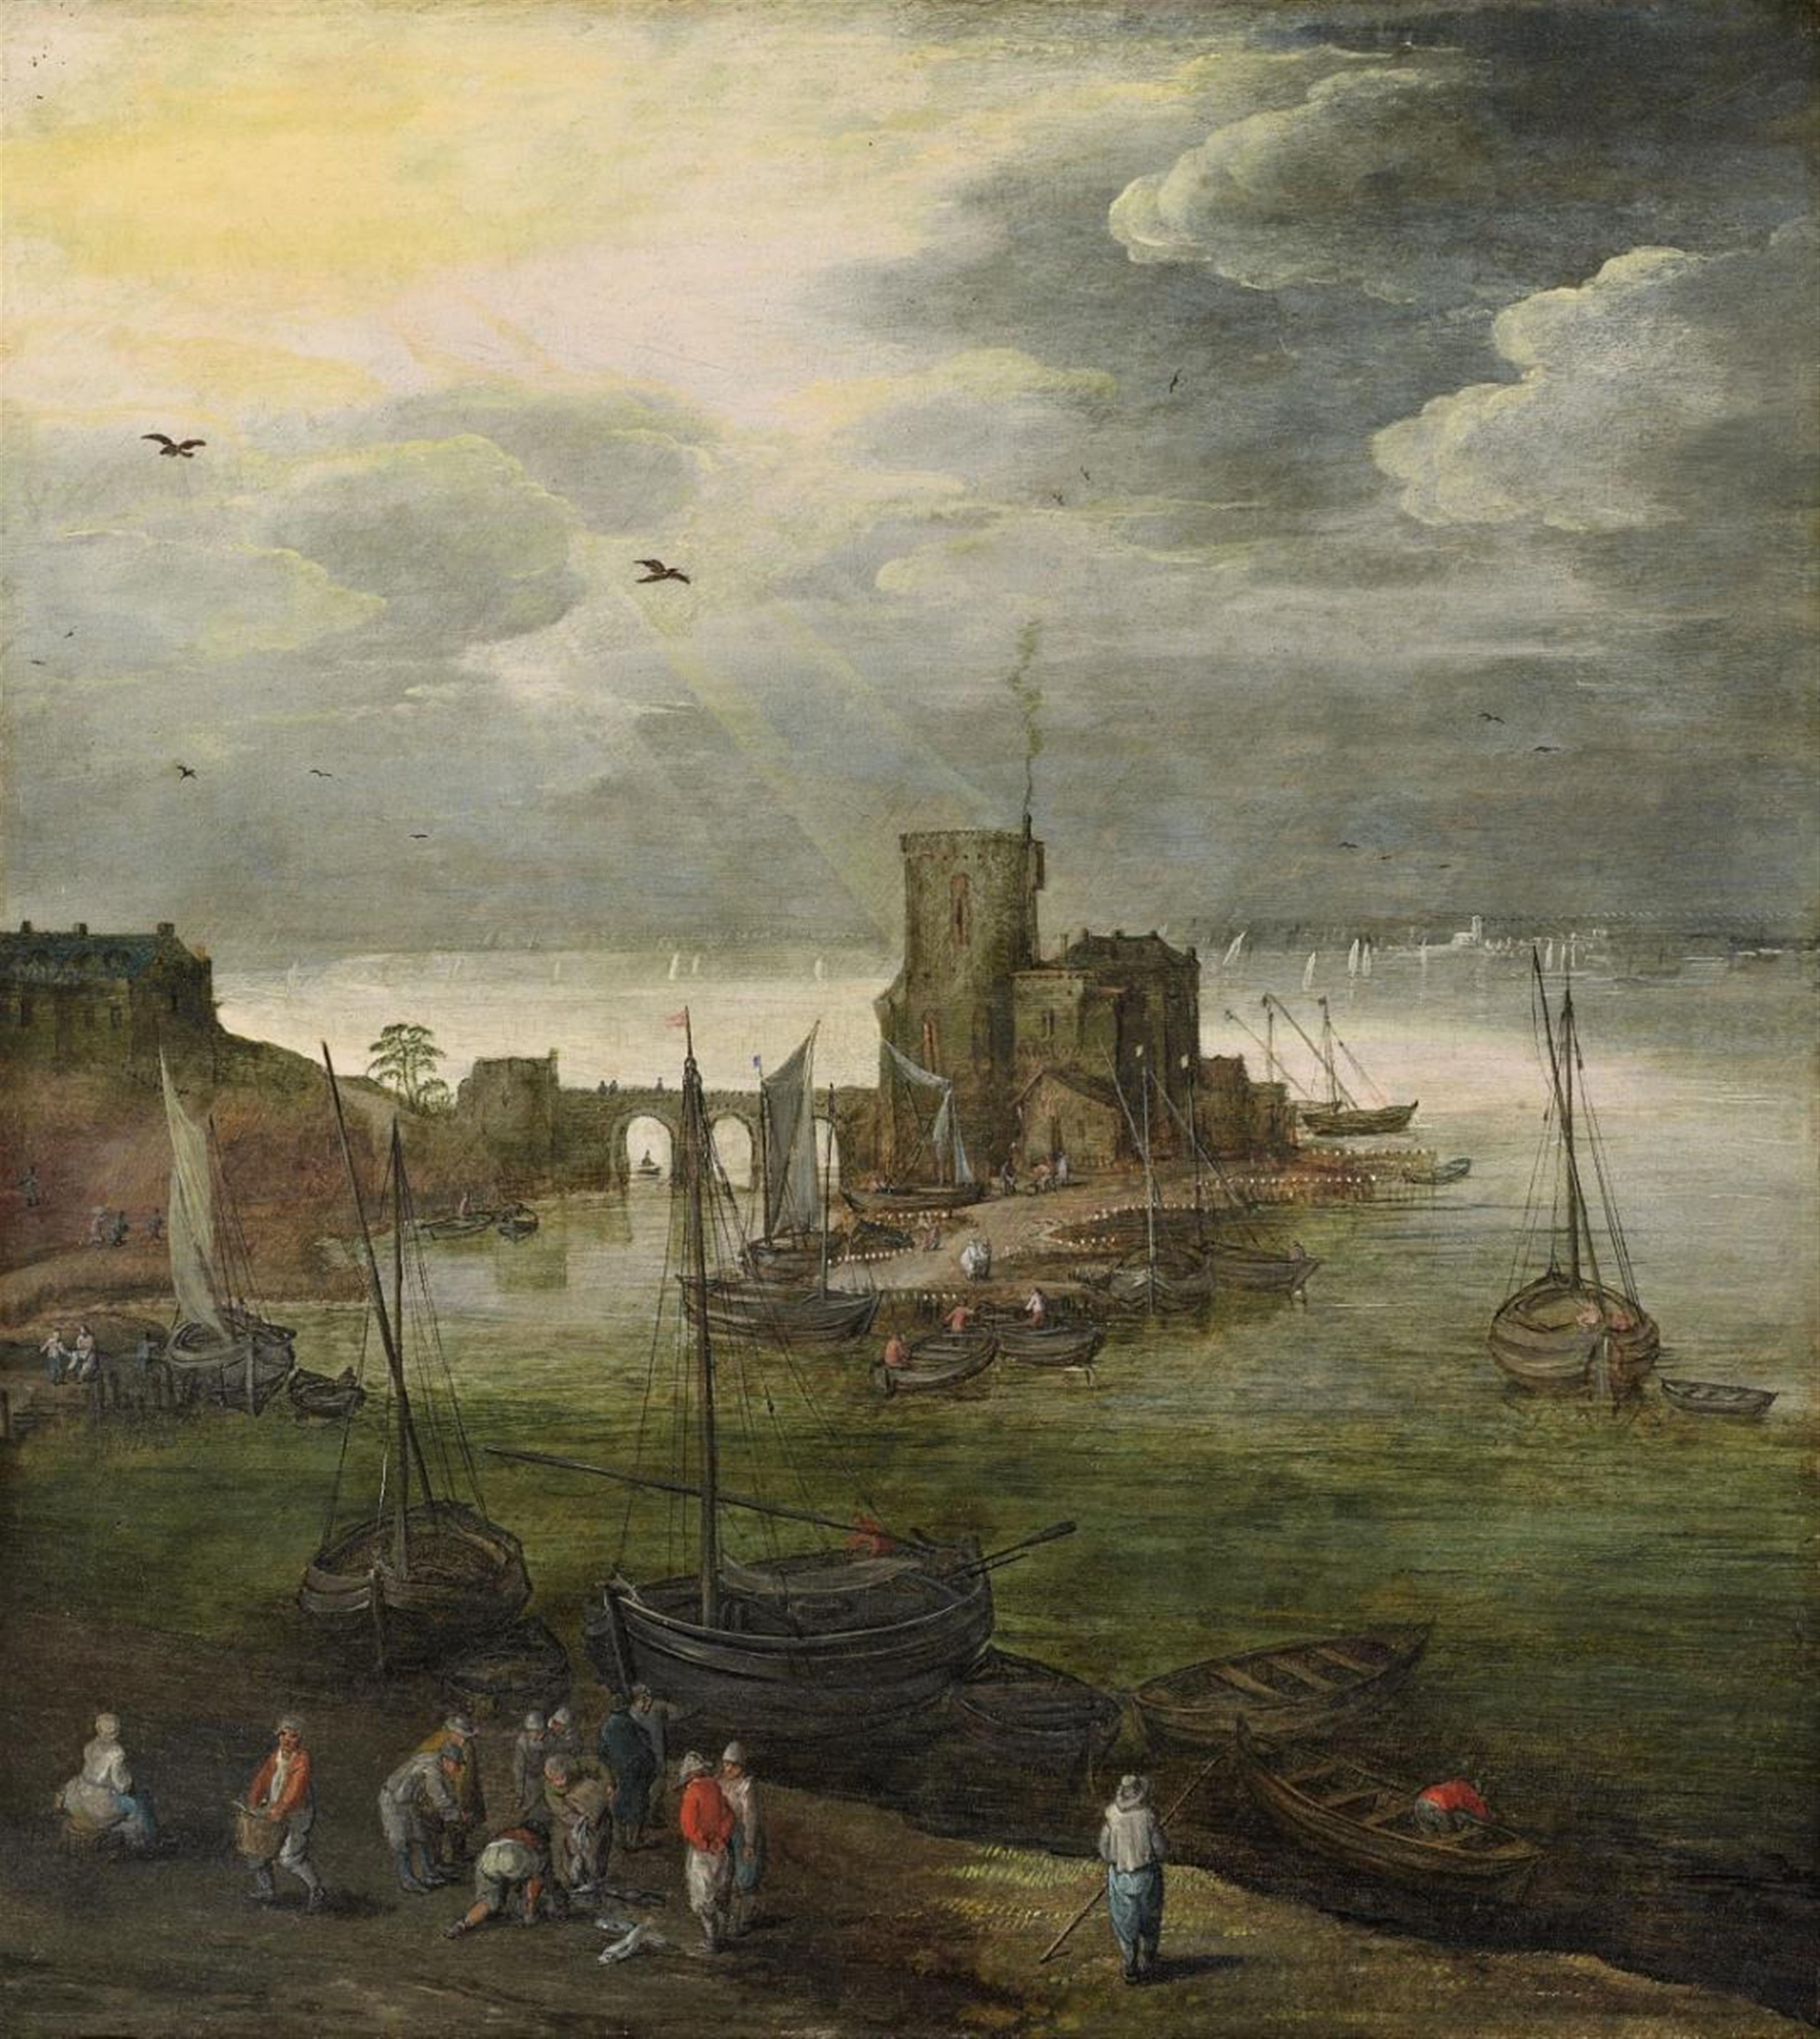 Joos de Momper
Jan Brueghel the Younger - Harbour Scene with Fishermen - image-1